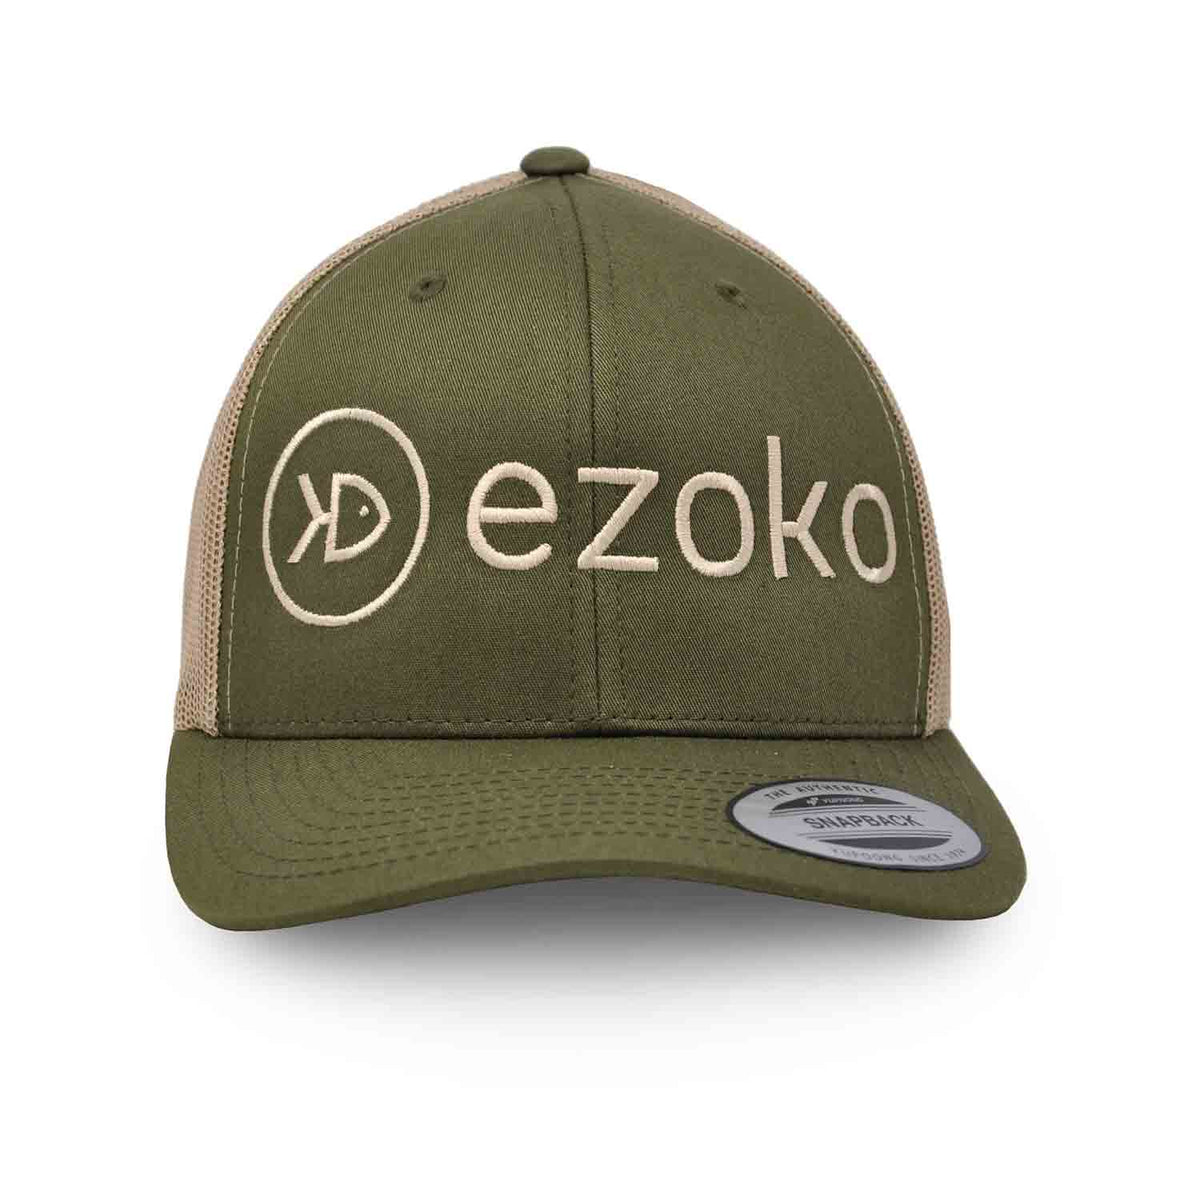 Ezoko Classics YUPOONG Retro Trucker cap Moss / Khaki Normal Sand Hats